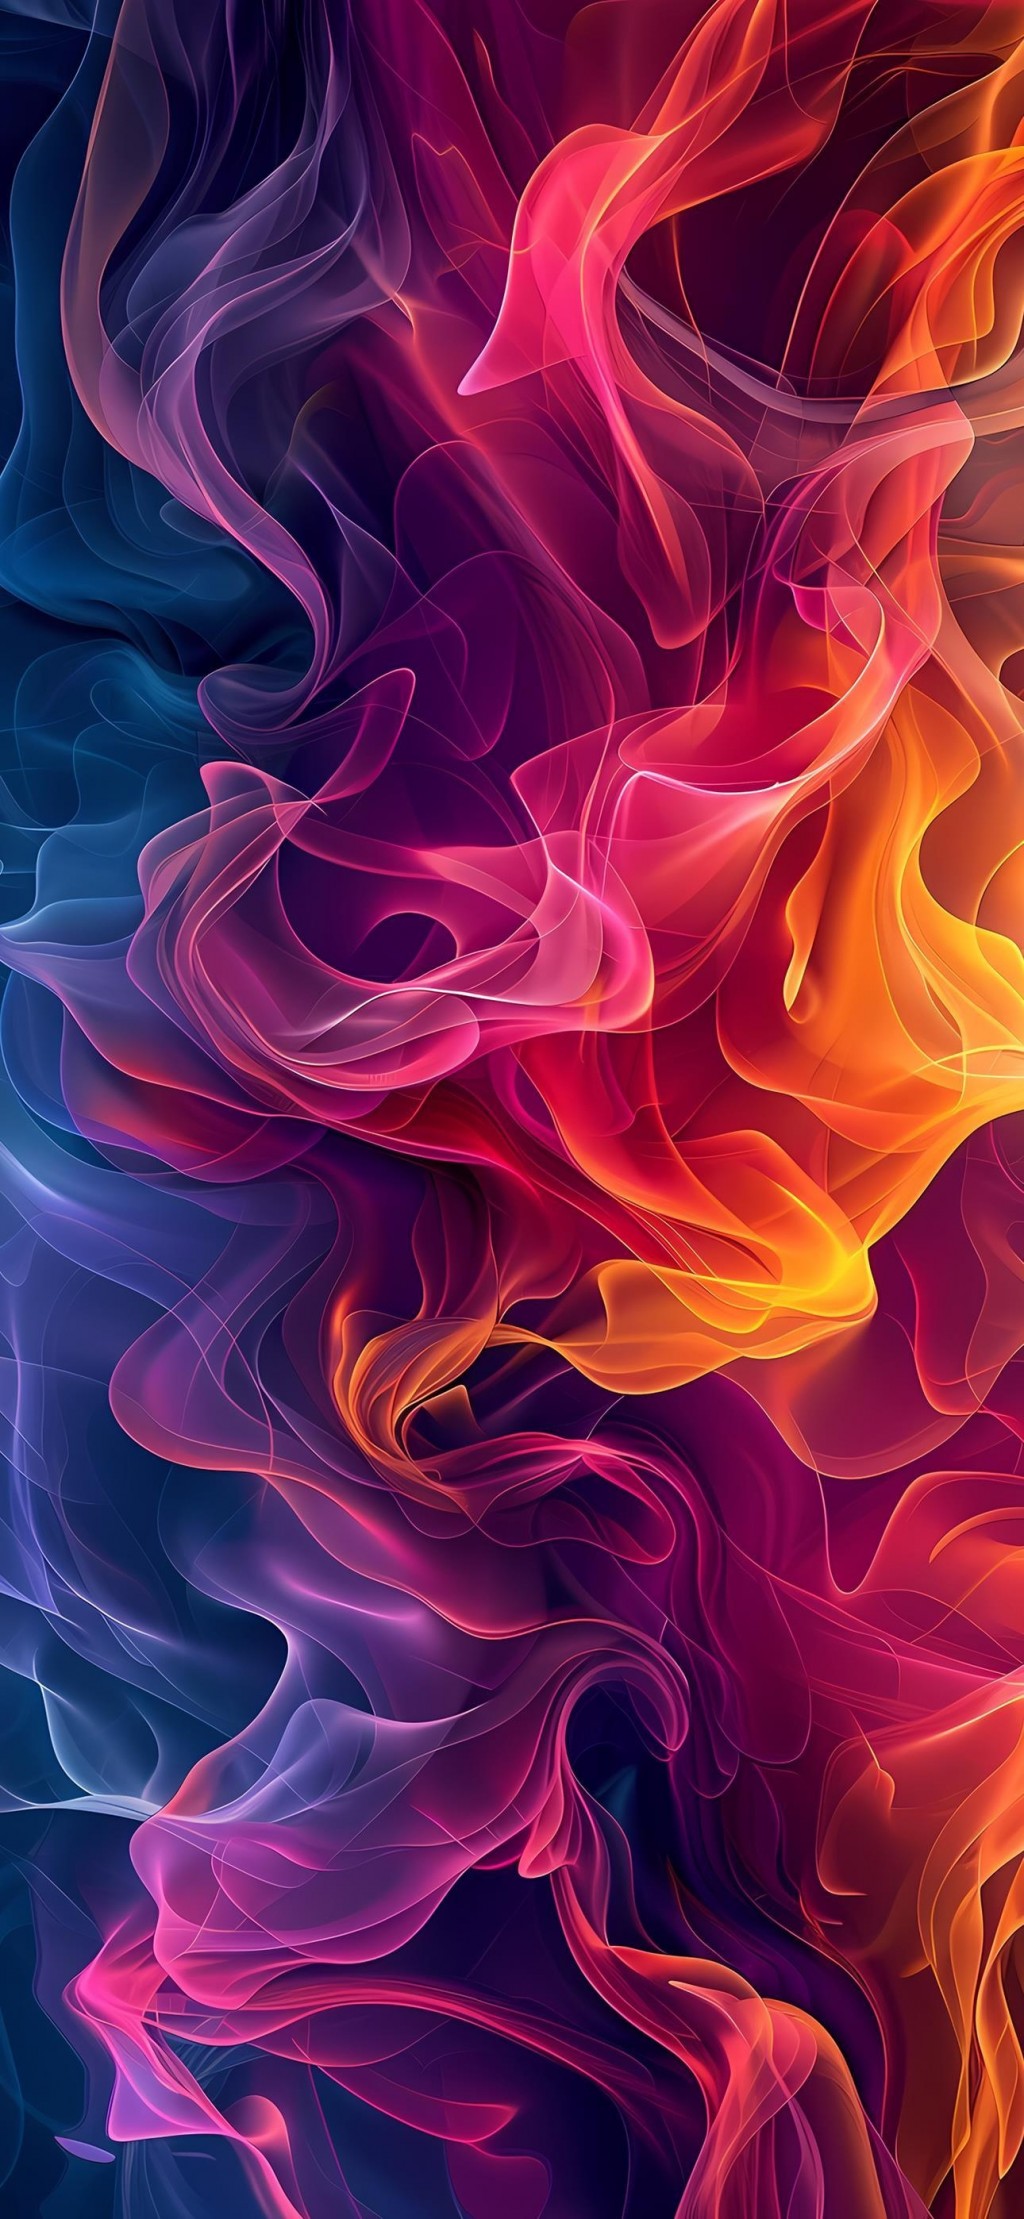 烟雾抽象创意缤纷色彩手机壁纸